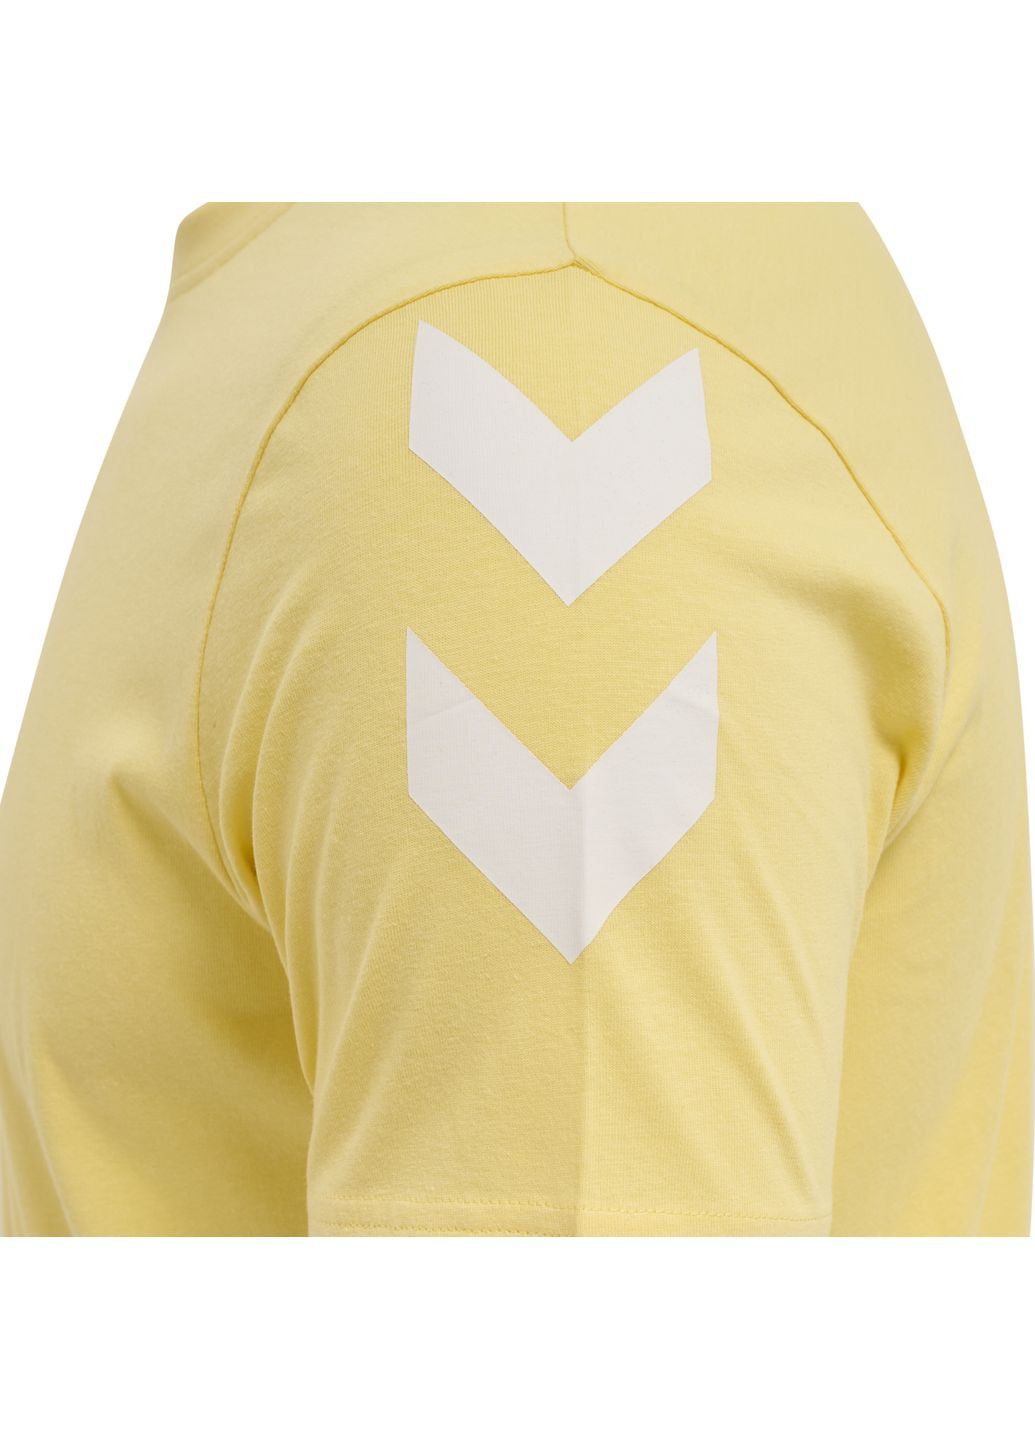 Желтая футболка с логотипом для мужчины 212570 Hummel